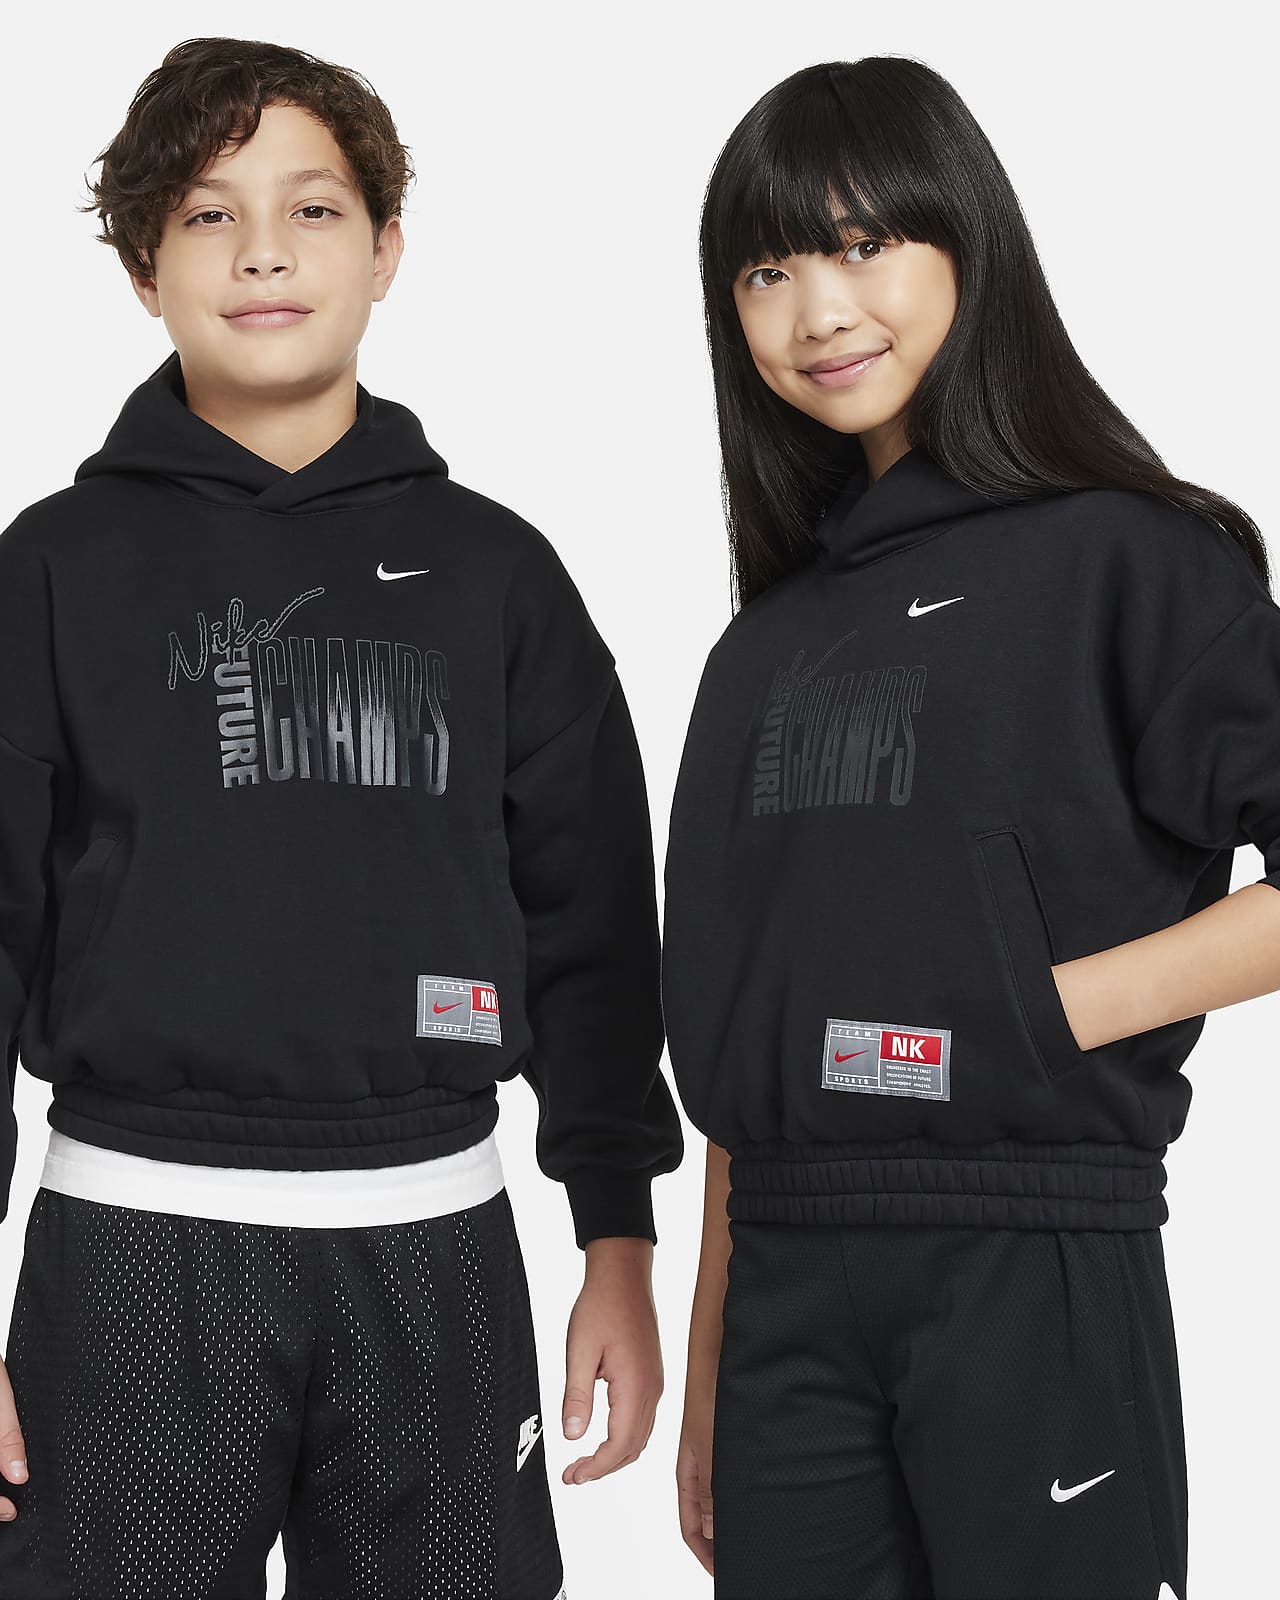 Nike Culture of Basketball kapucnis, belebújós polárpulóver nagyobb gyerekeknek